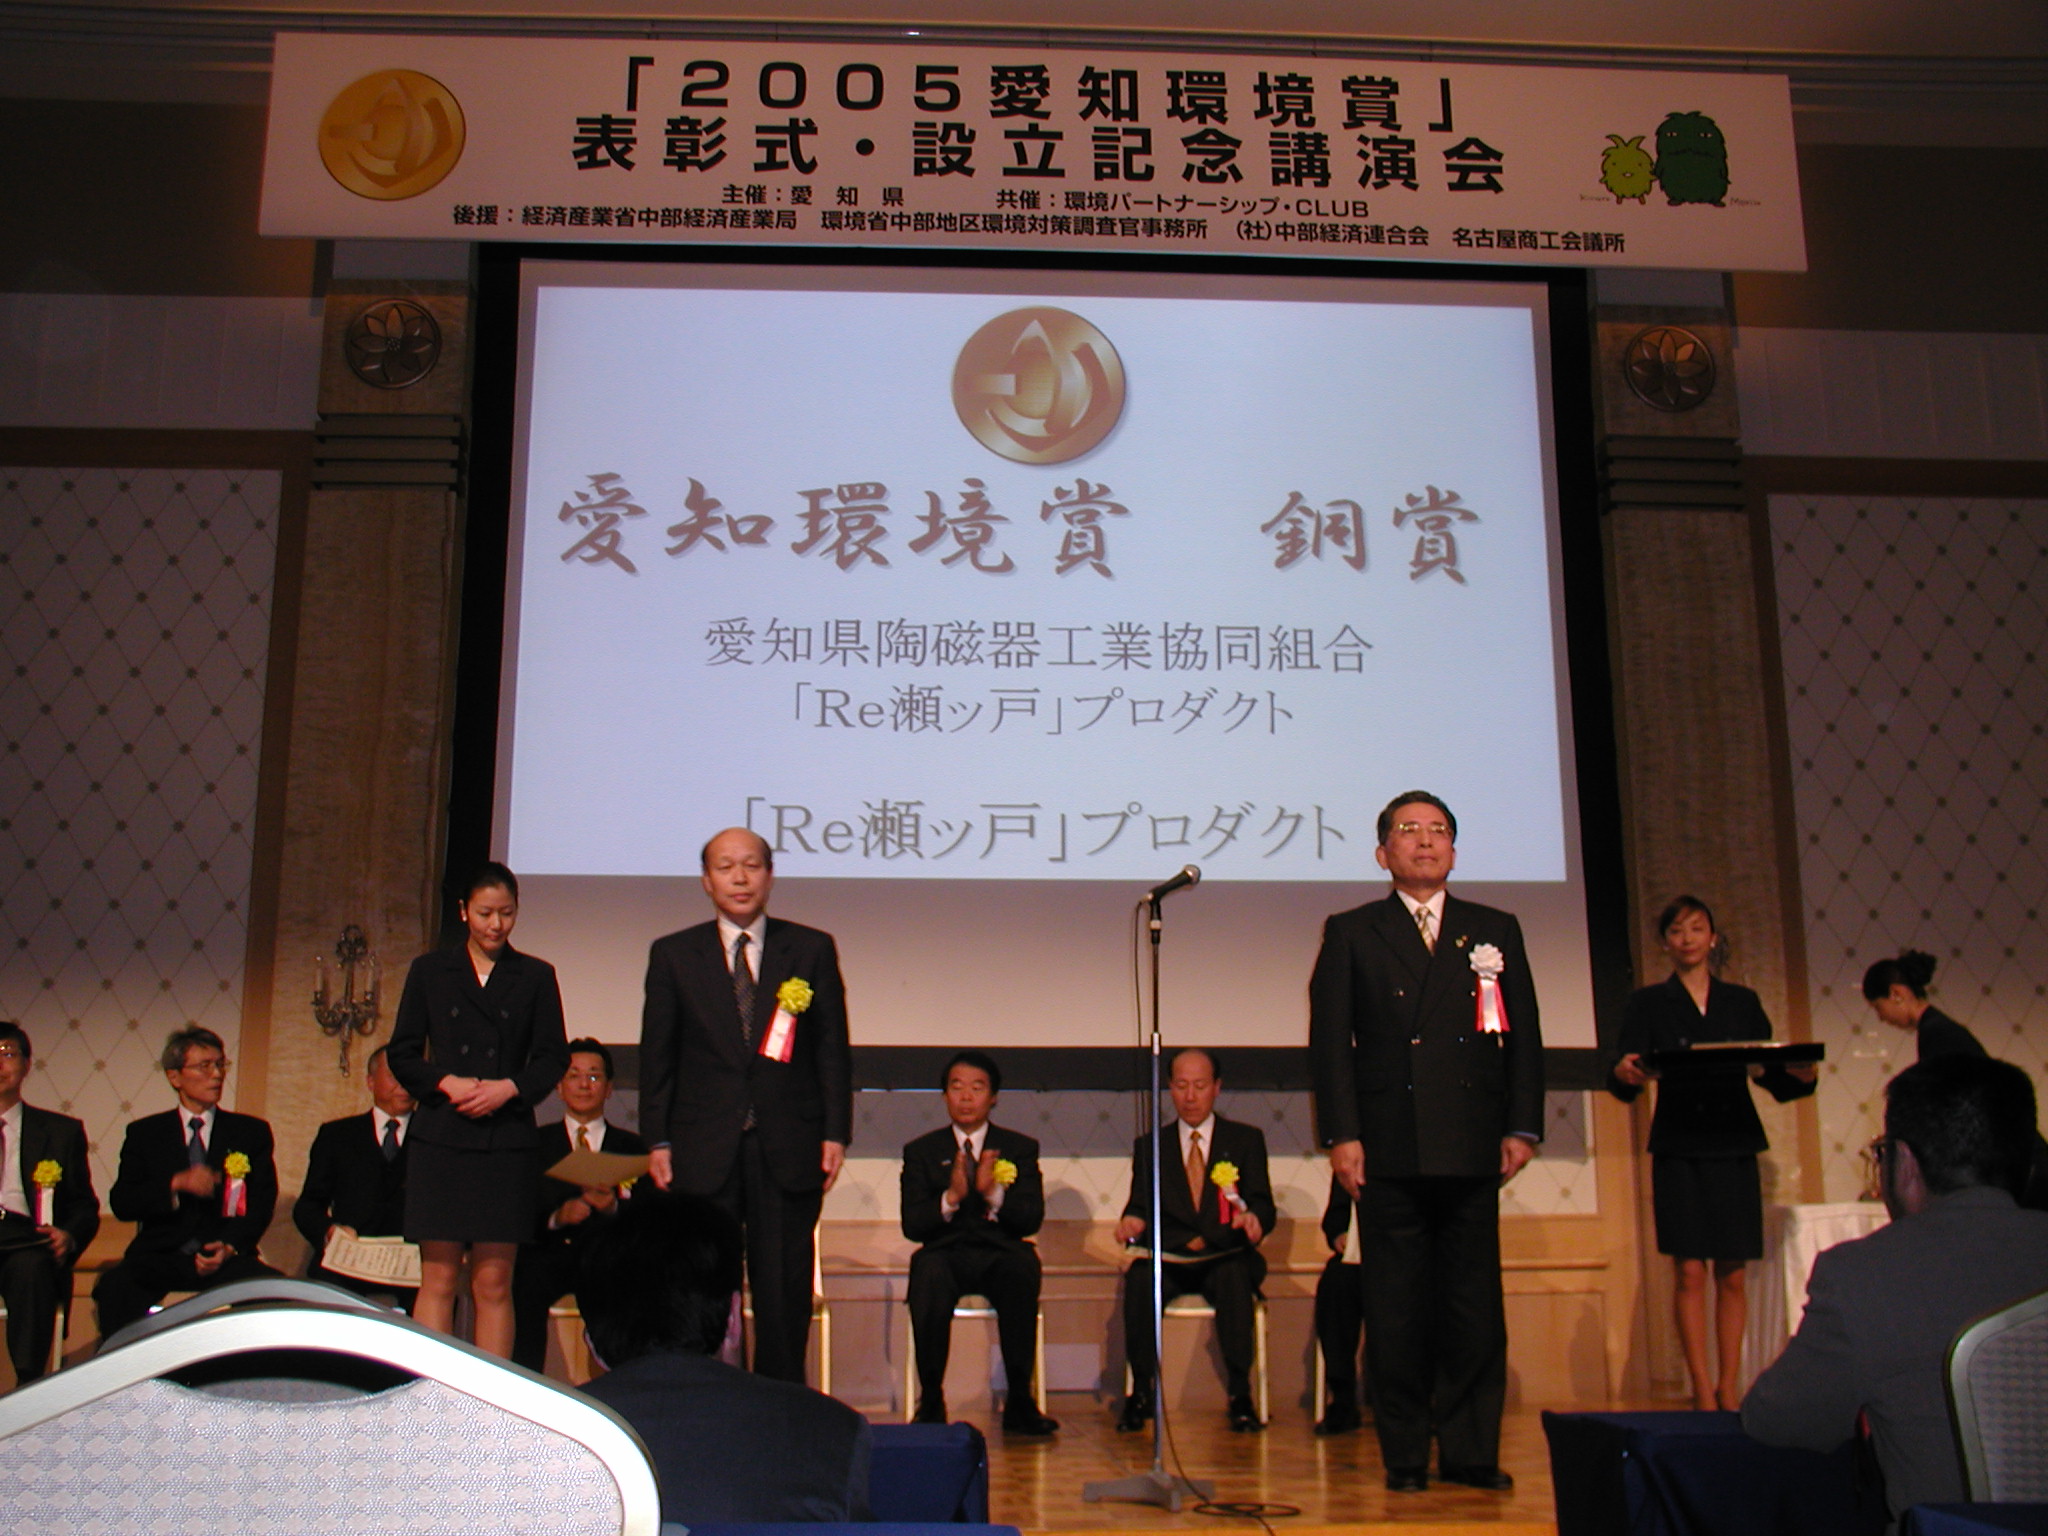 2005愛知環境賞｢銅賞」を受賞